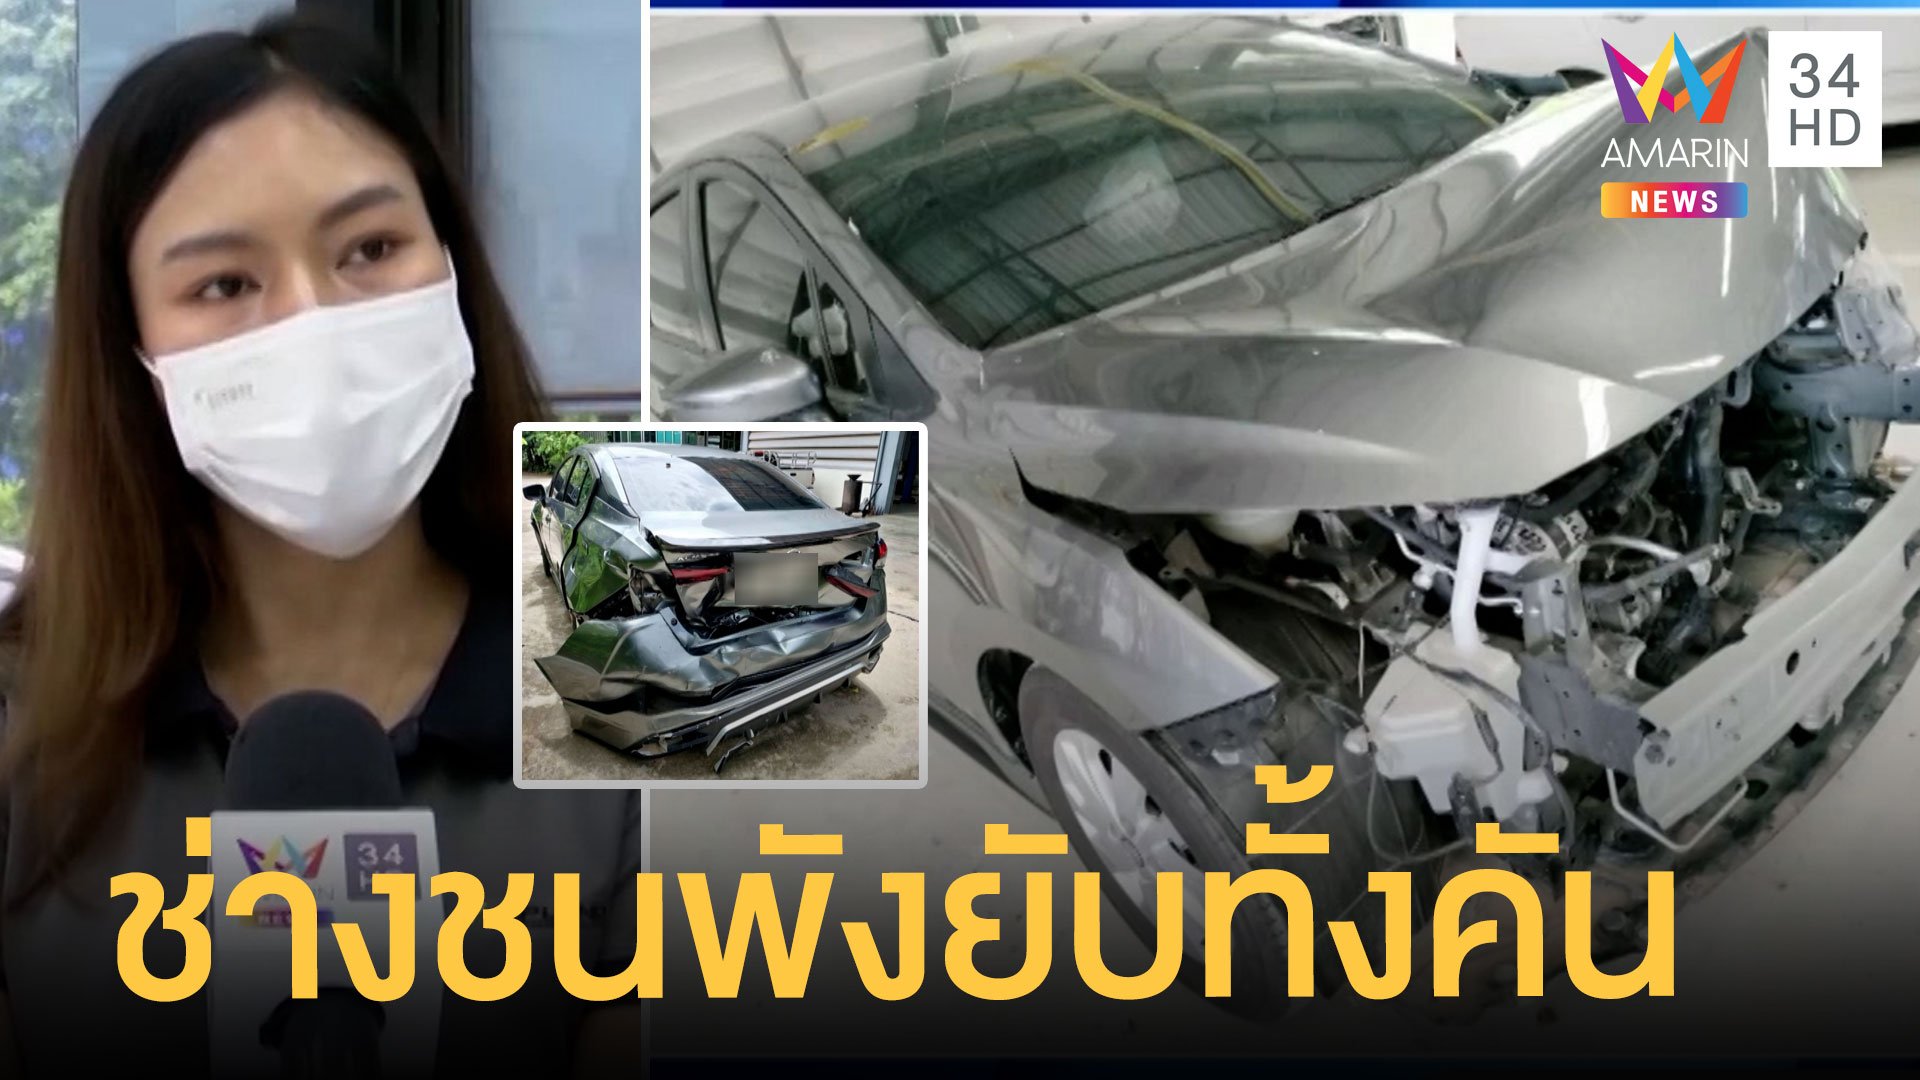 สาวโวยรถเข้าศูนย์ซ่อมสีช่างขับชนพังยับ เยียวยาแค่ซ่อมกับเงิน 3 หมื่น | ข่าวเที่ยงอมรินทร์ | 16 ส.ค. 65 | AMARIN TVHD34